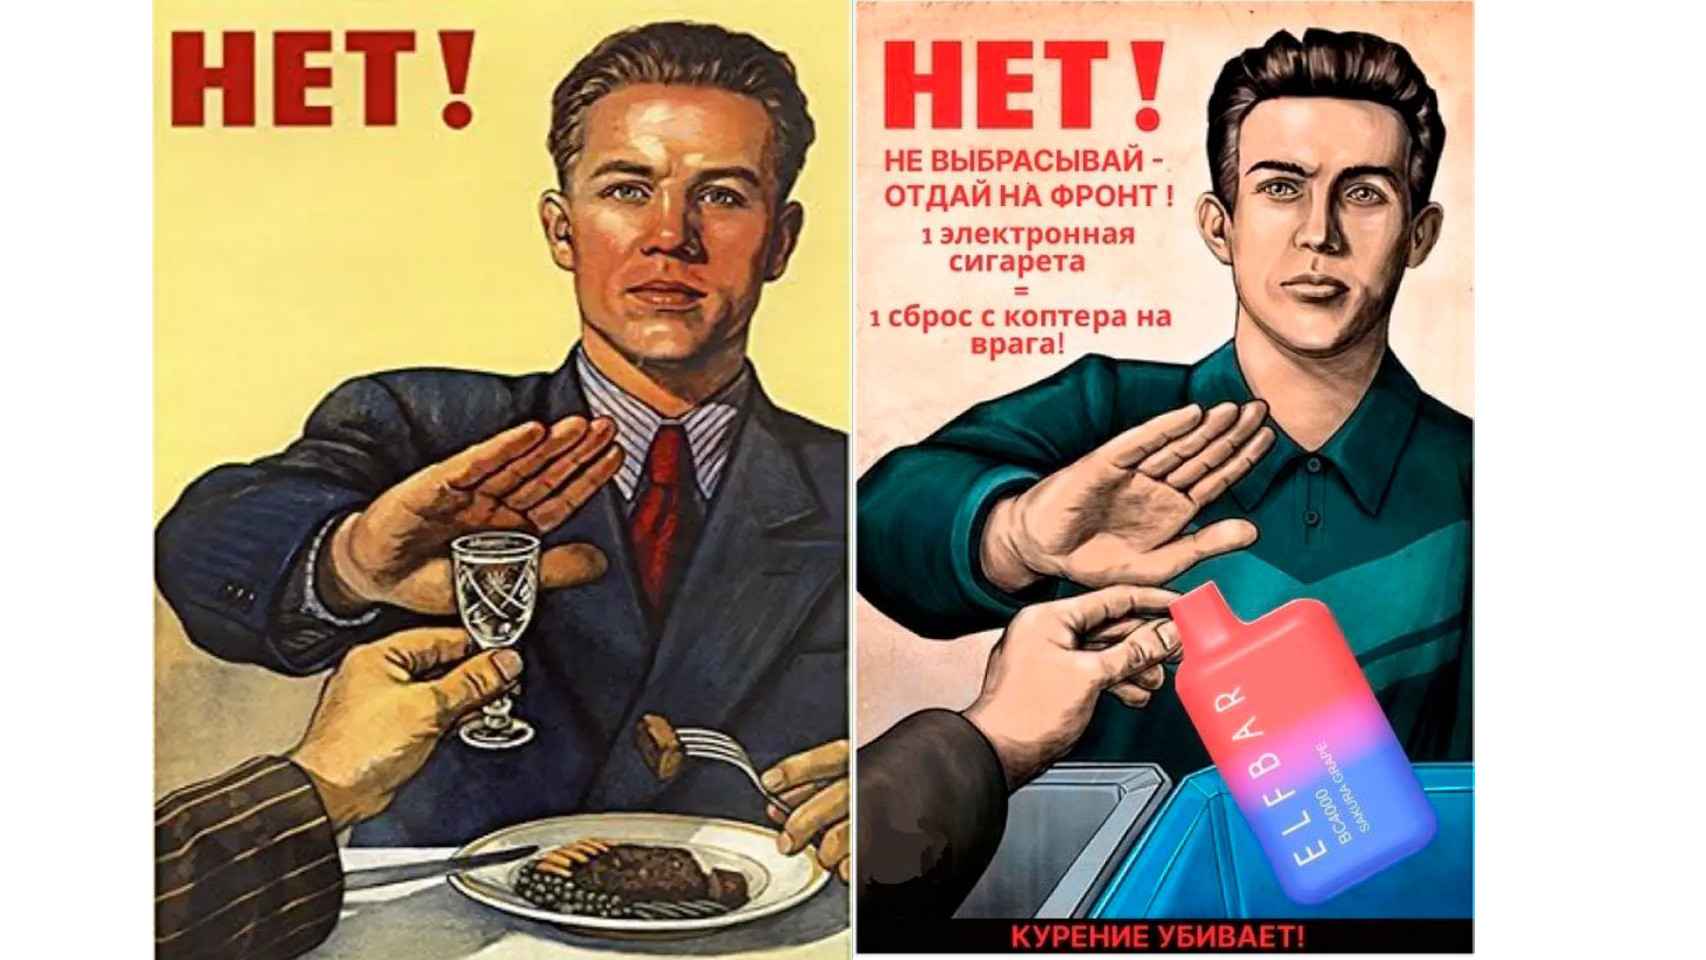 Izquierda: póster propagandístico de la URRS. Derecha: imitación de la campaña universitaria.